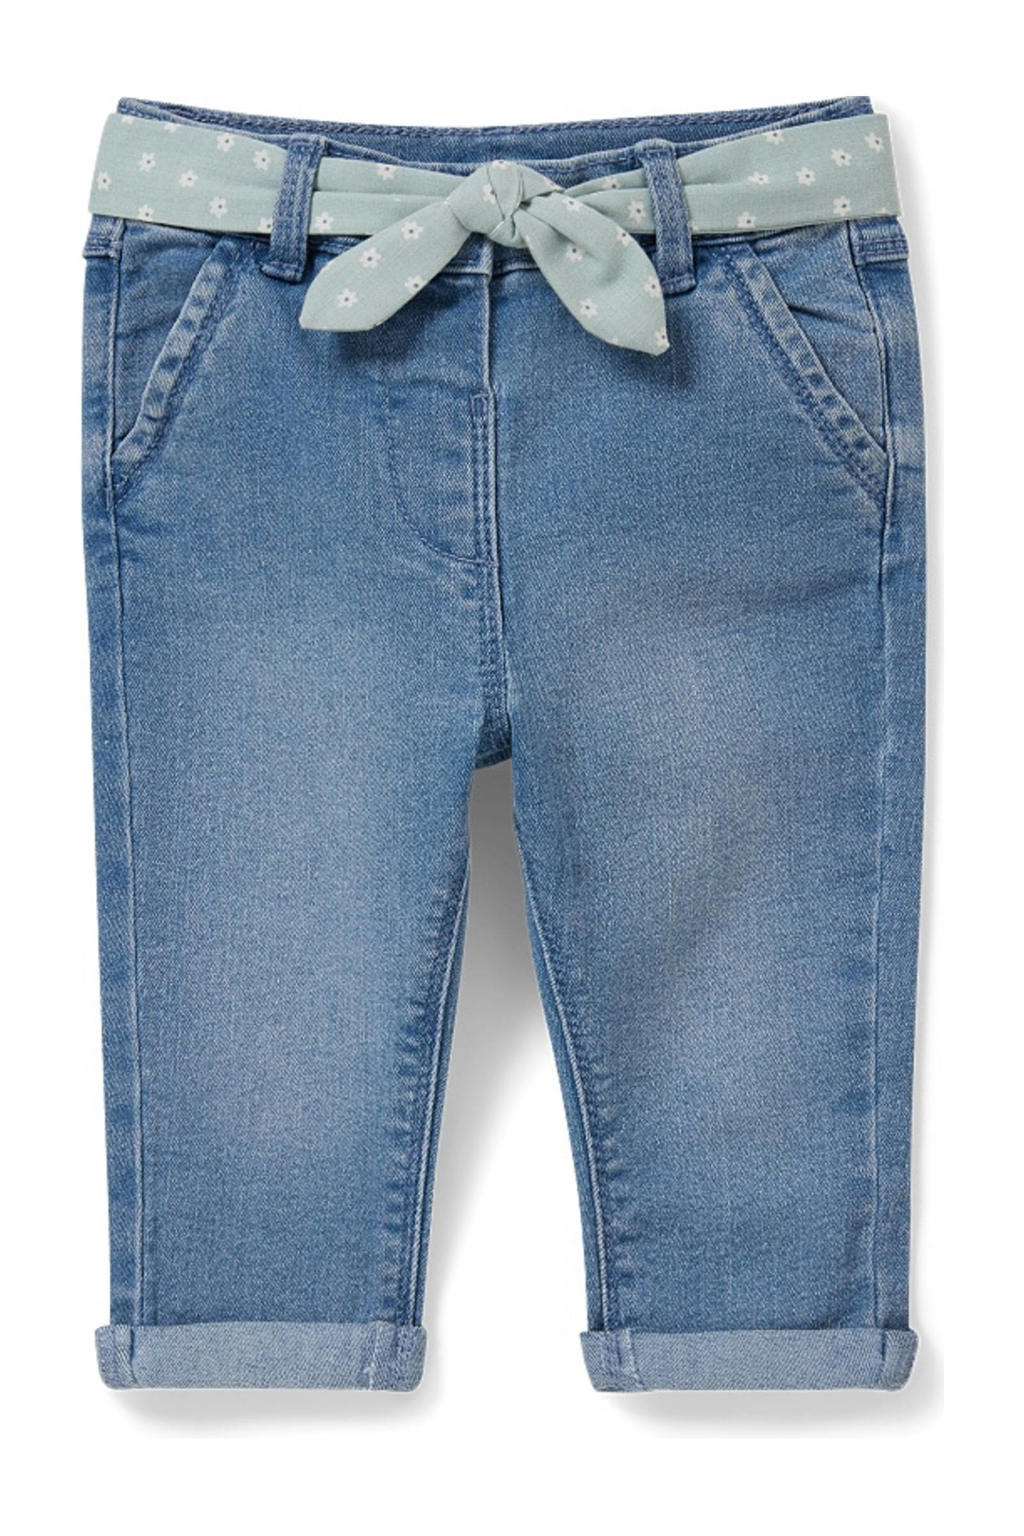 Stonewashed meisjes C&A slim fit jeans van stretchdenim met skinny fit, regular waist en drukknoopsluiting